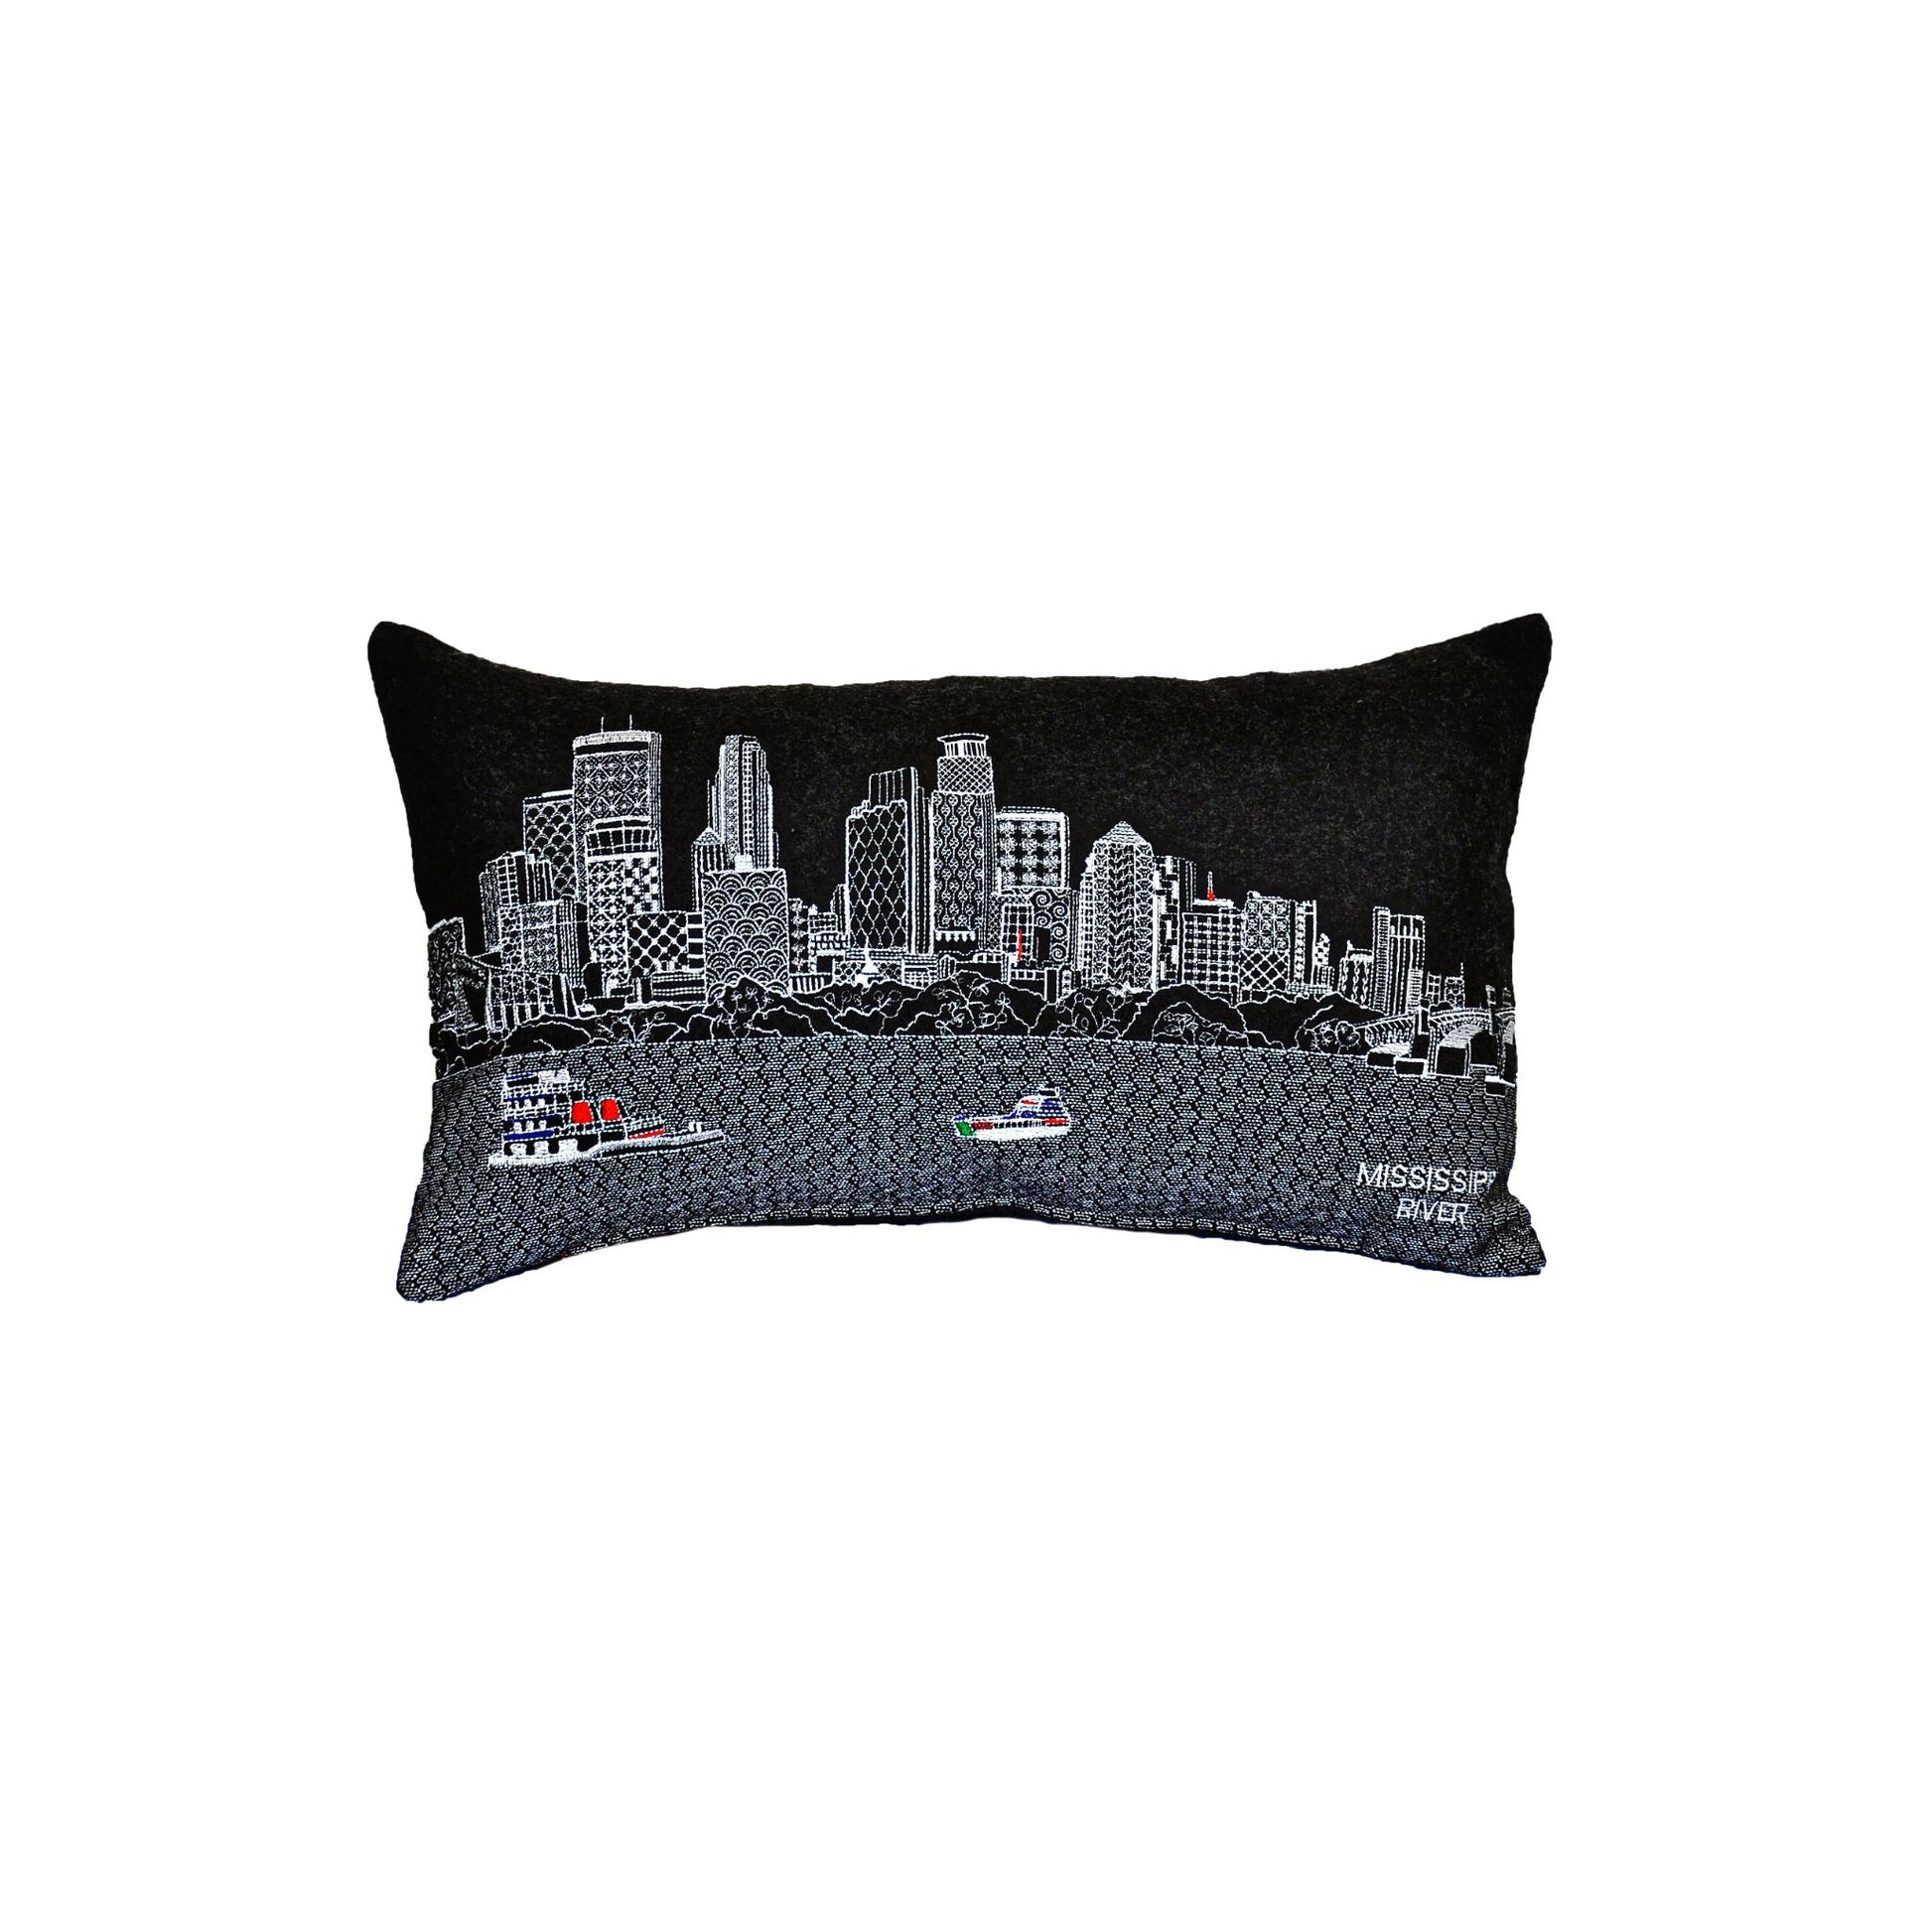 Minneapolis Prince Night Pillow